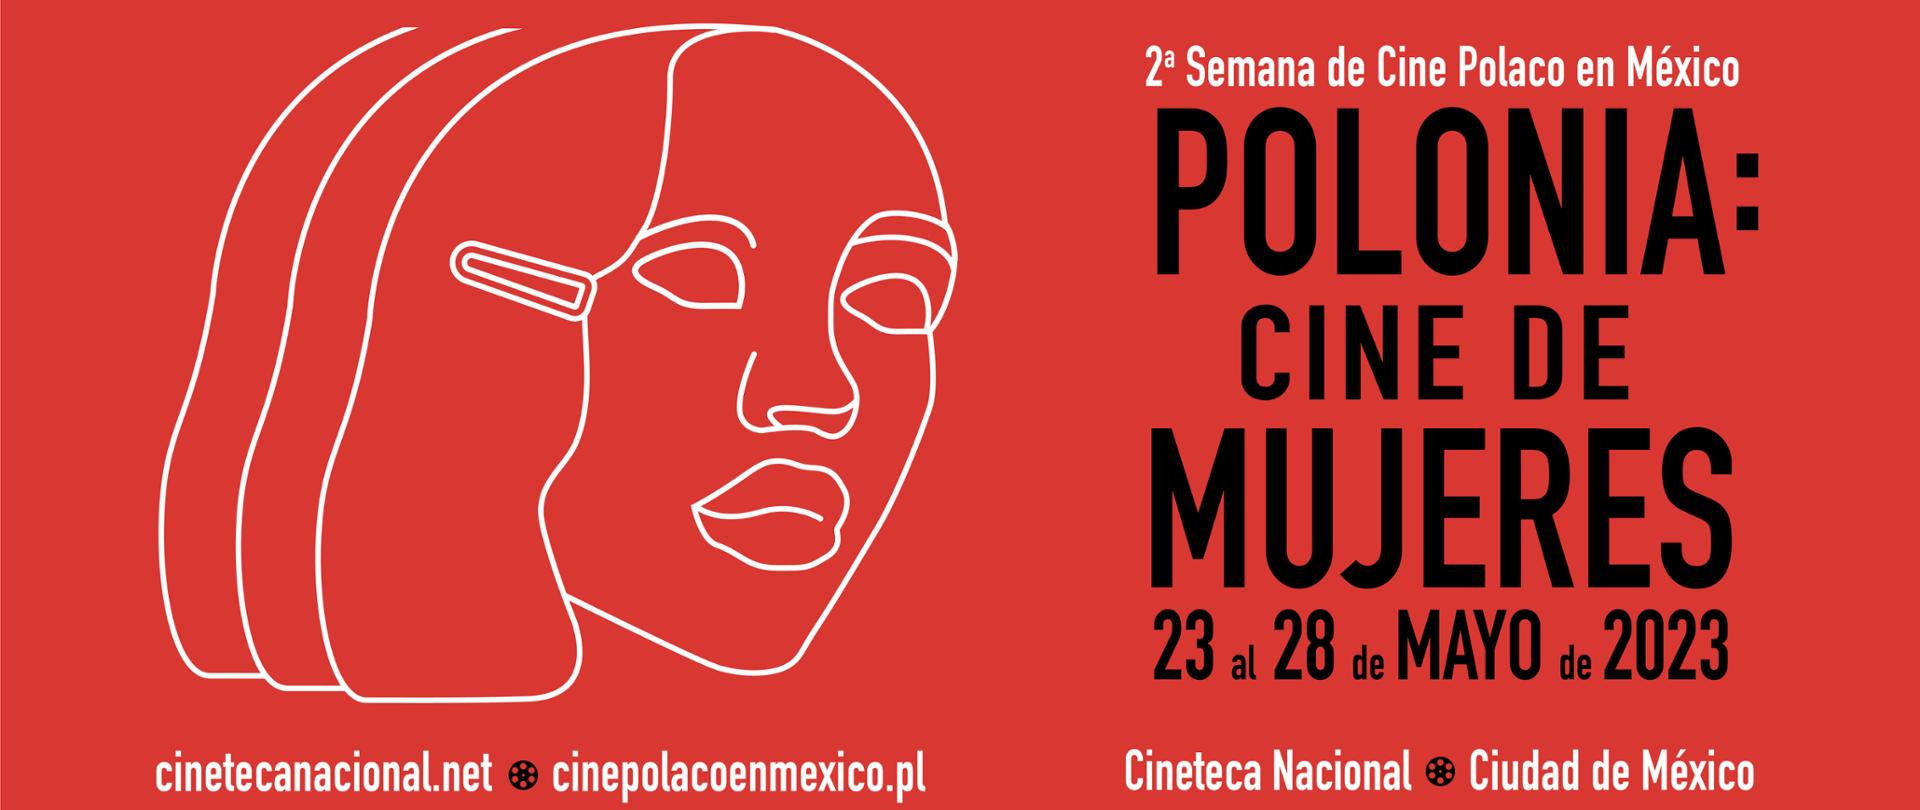 2a Semana de Cine Polaco en México